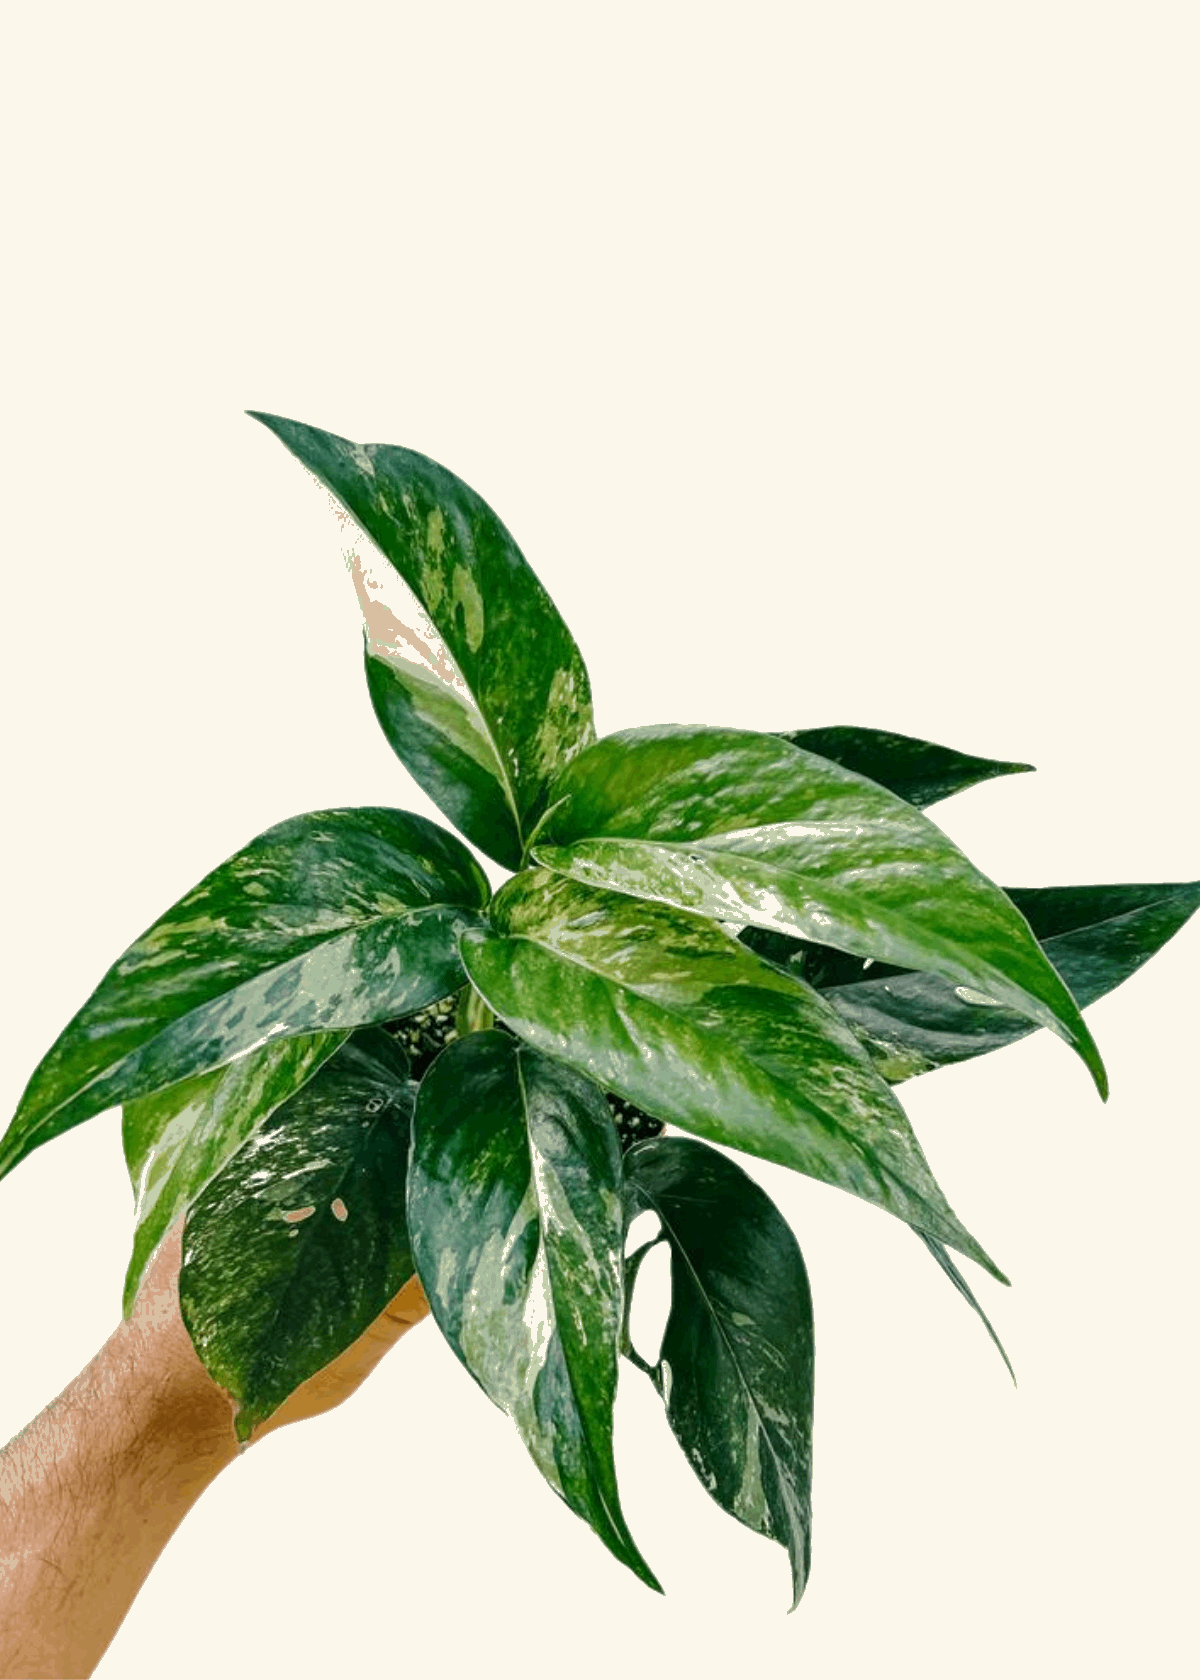 4” Epipremnum pinnatum variegata ‘Albo’